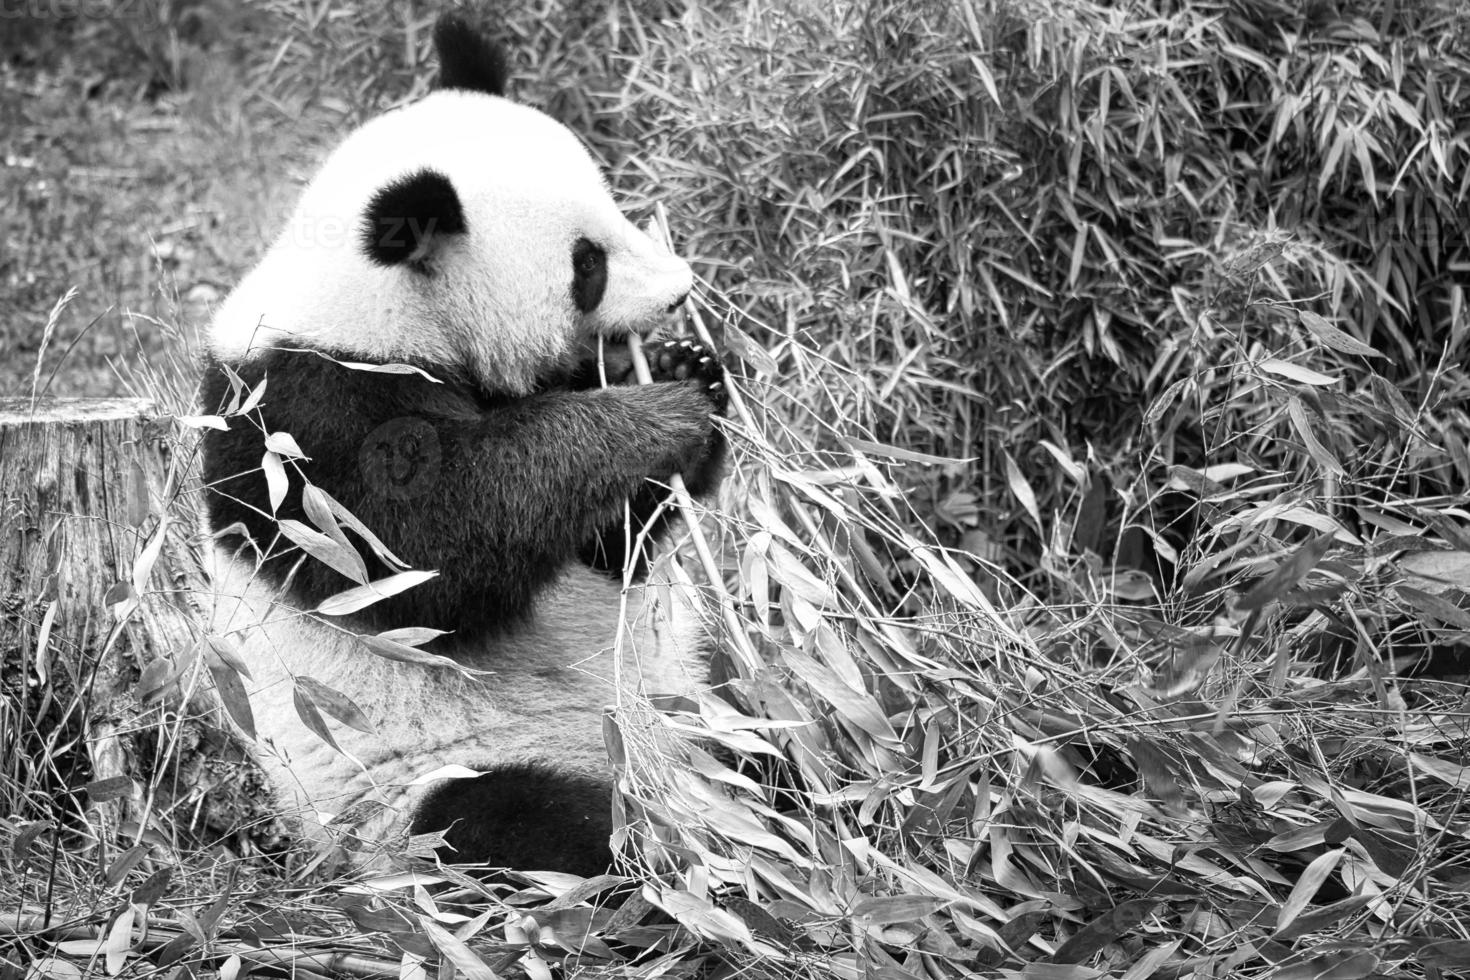 panda grande en blanco y negro, sentado comiendo bambú. especie en peligro. foto